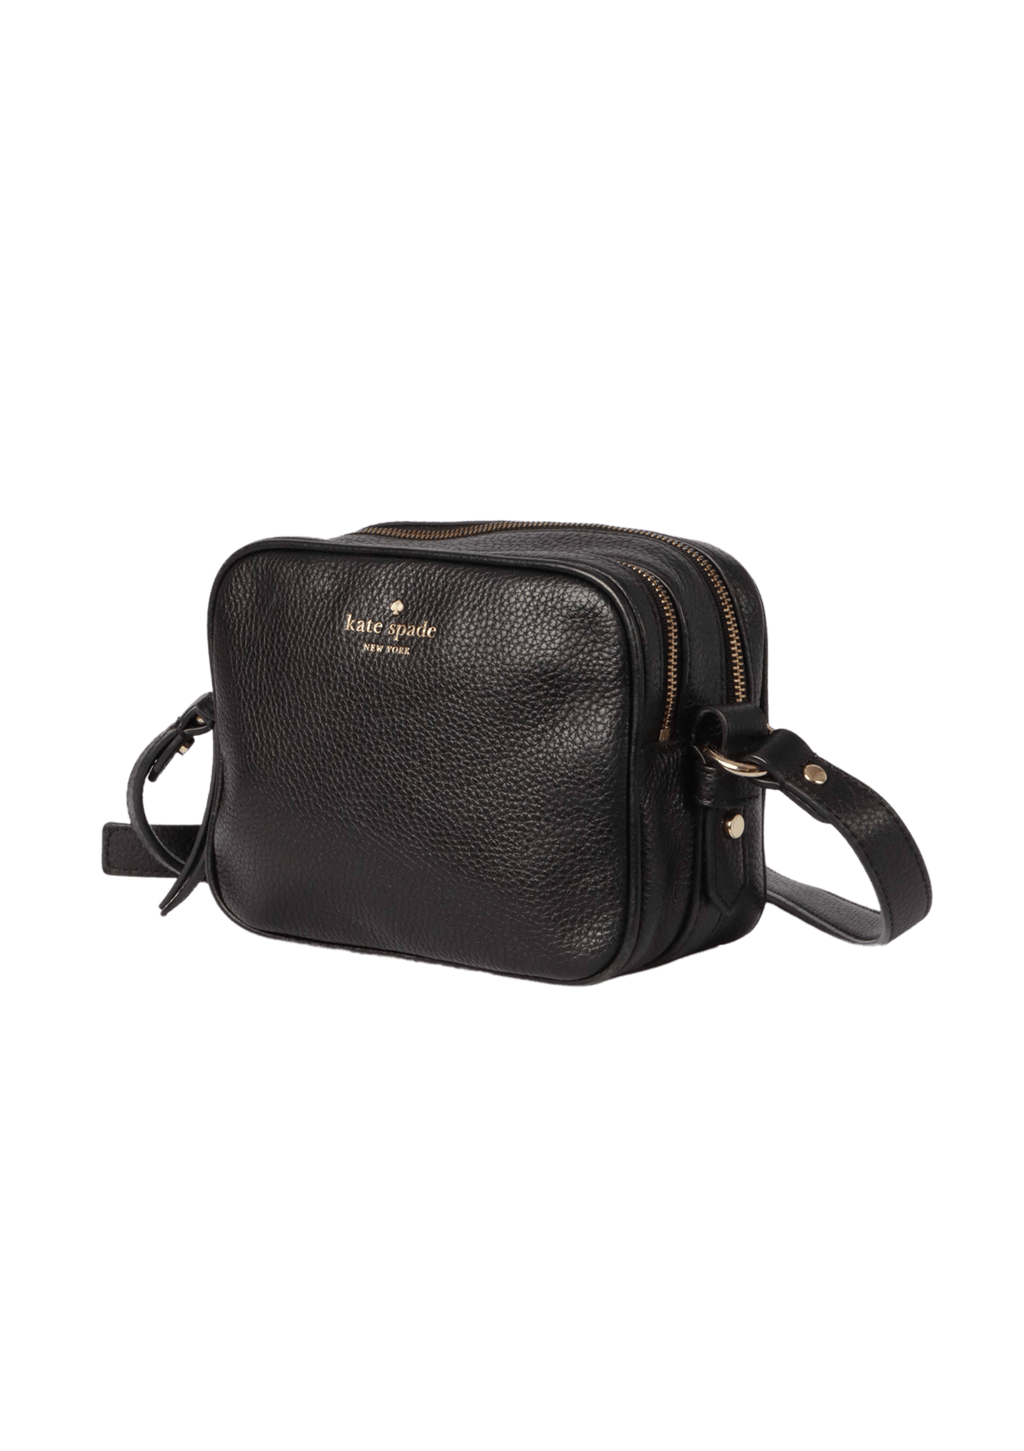 Bolsa Kate Spade Leather Camera Bag Preta Original – Gringa